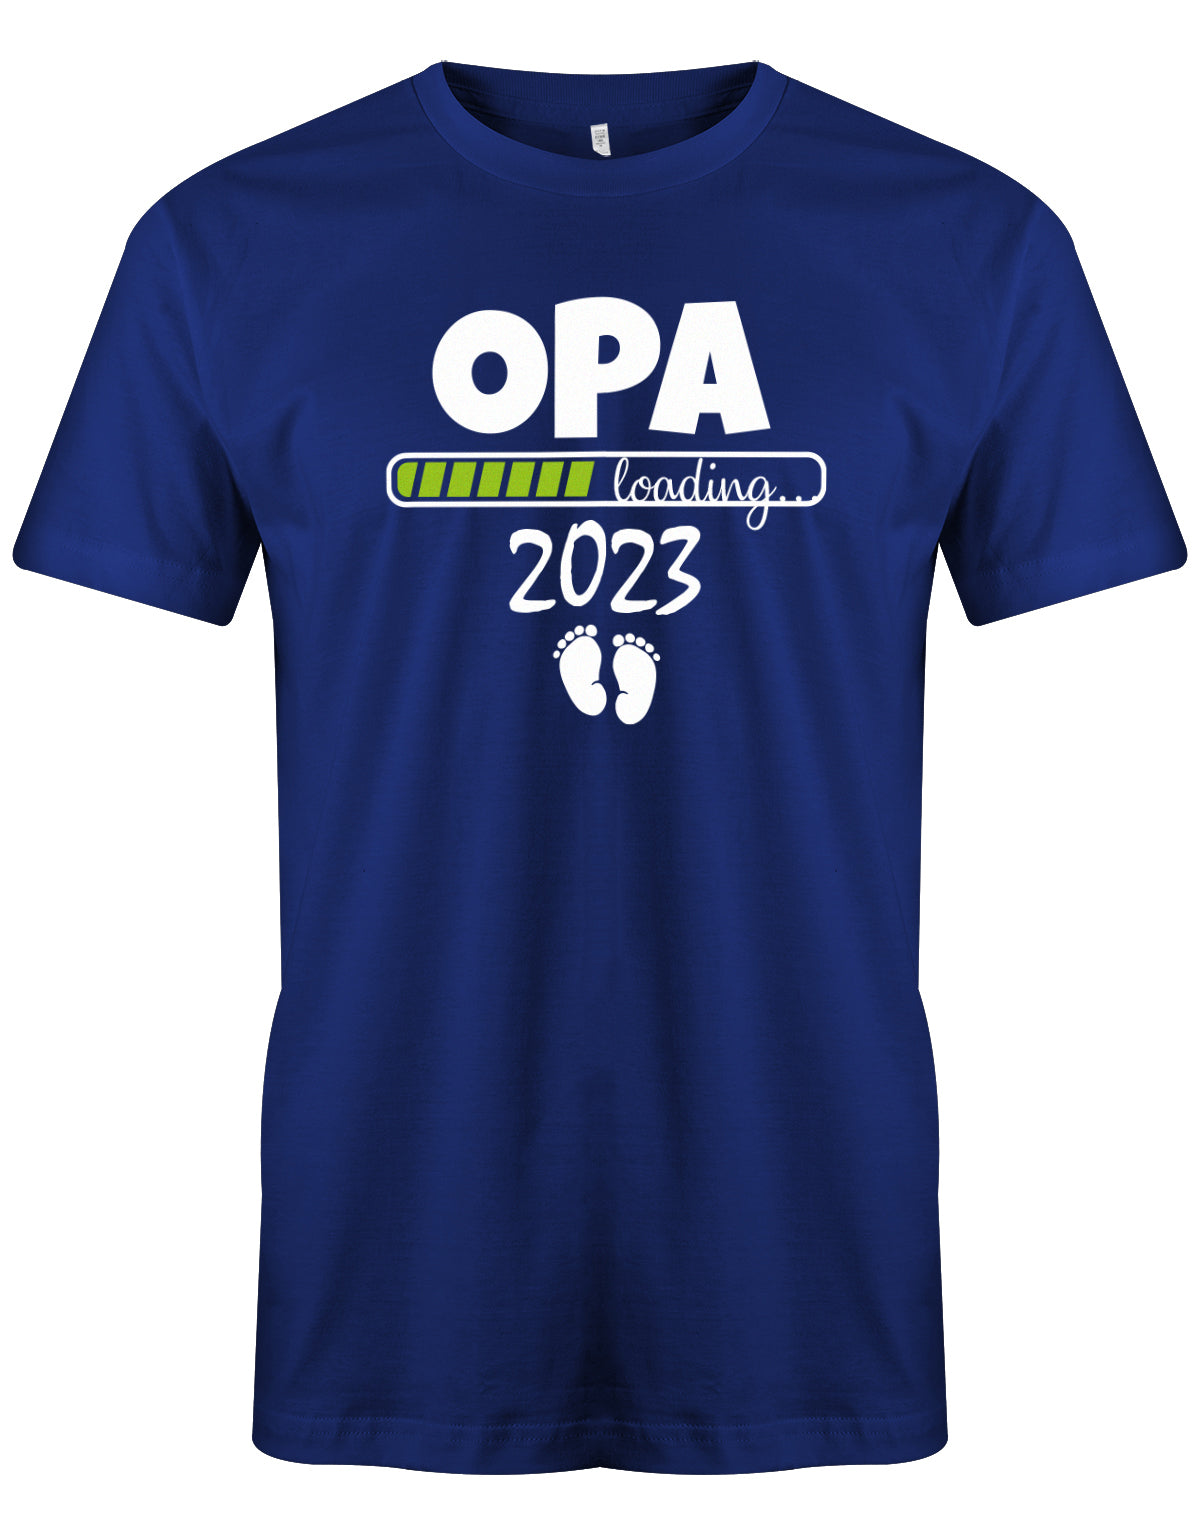 Opa T-Shirt Spruch für werdenden Opa - Opa Loading 2023 Balken lädt. Fußabdrücke Baby. Royalblau